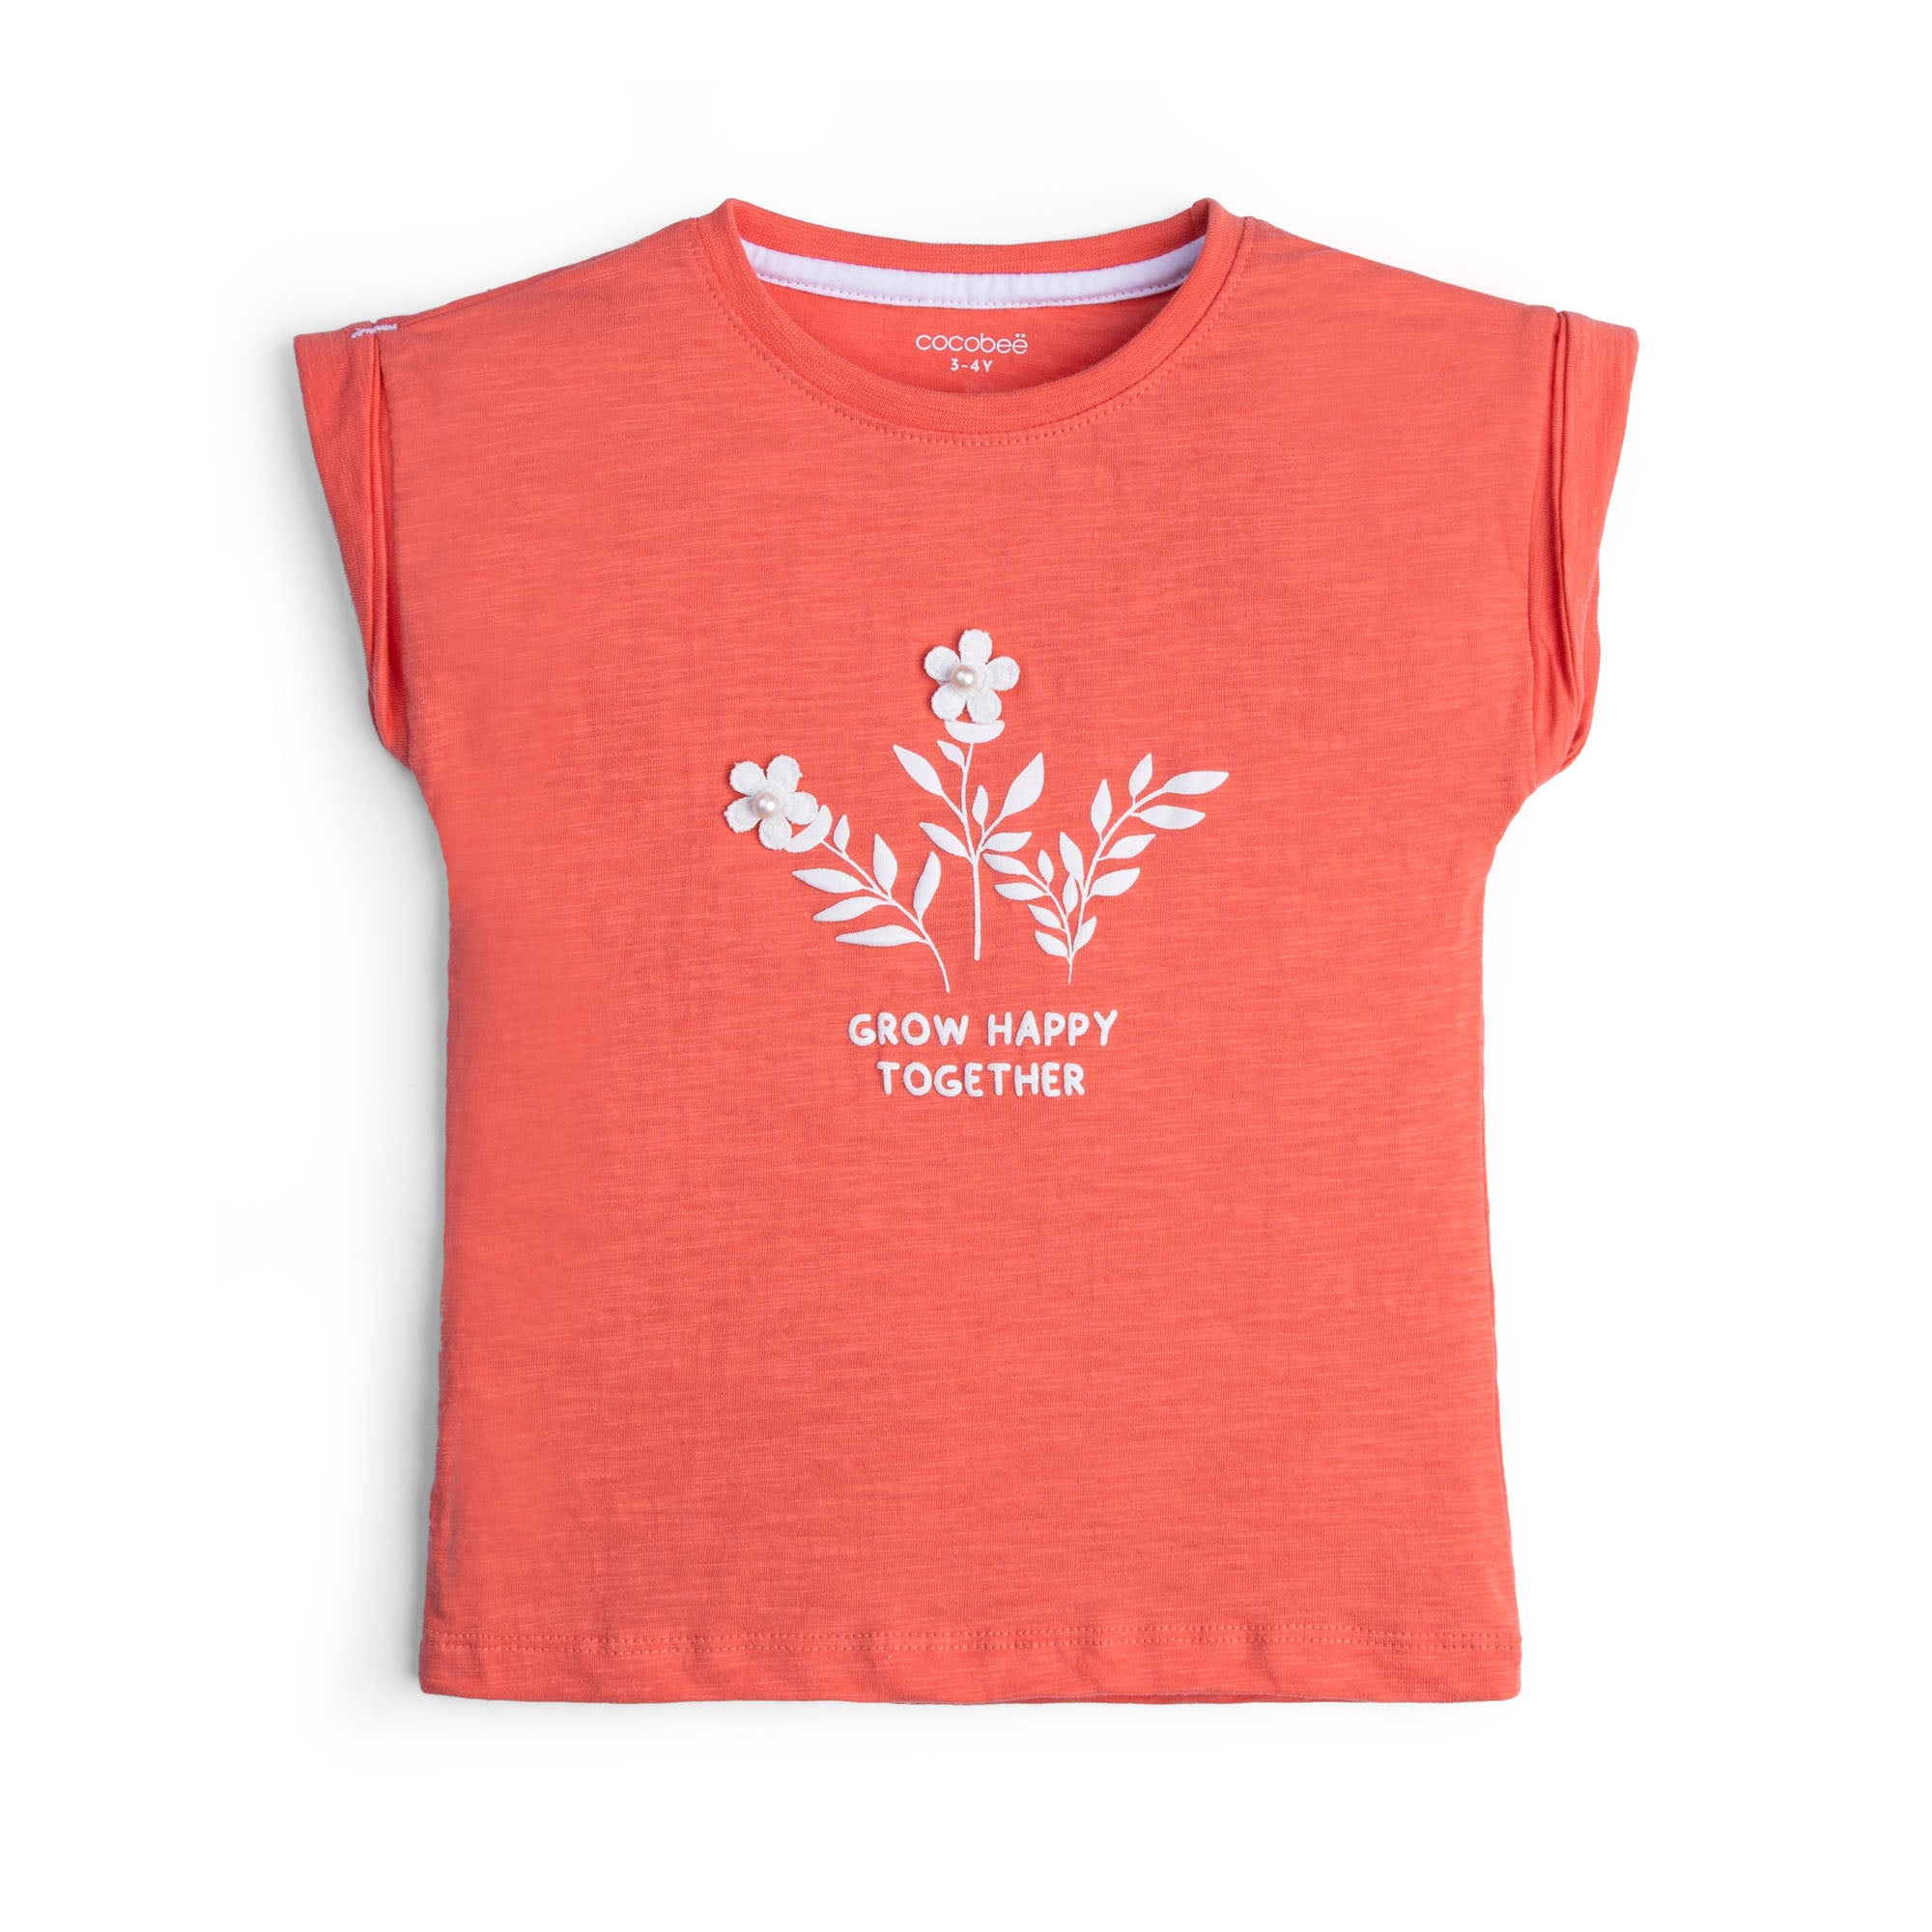 Peachy Florid Graphic T-shirt